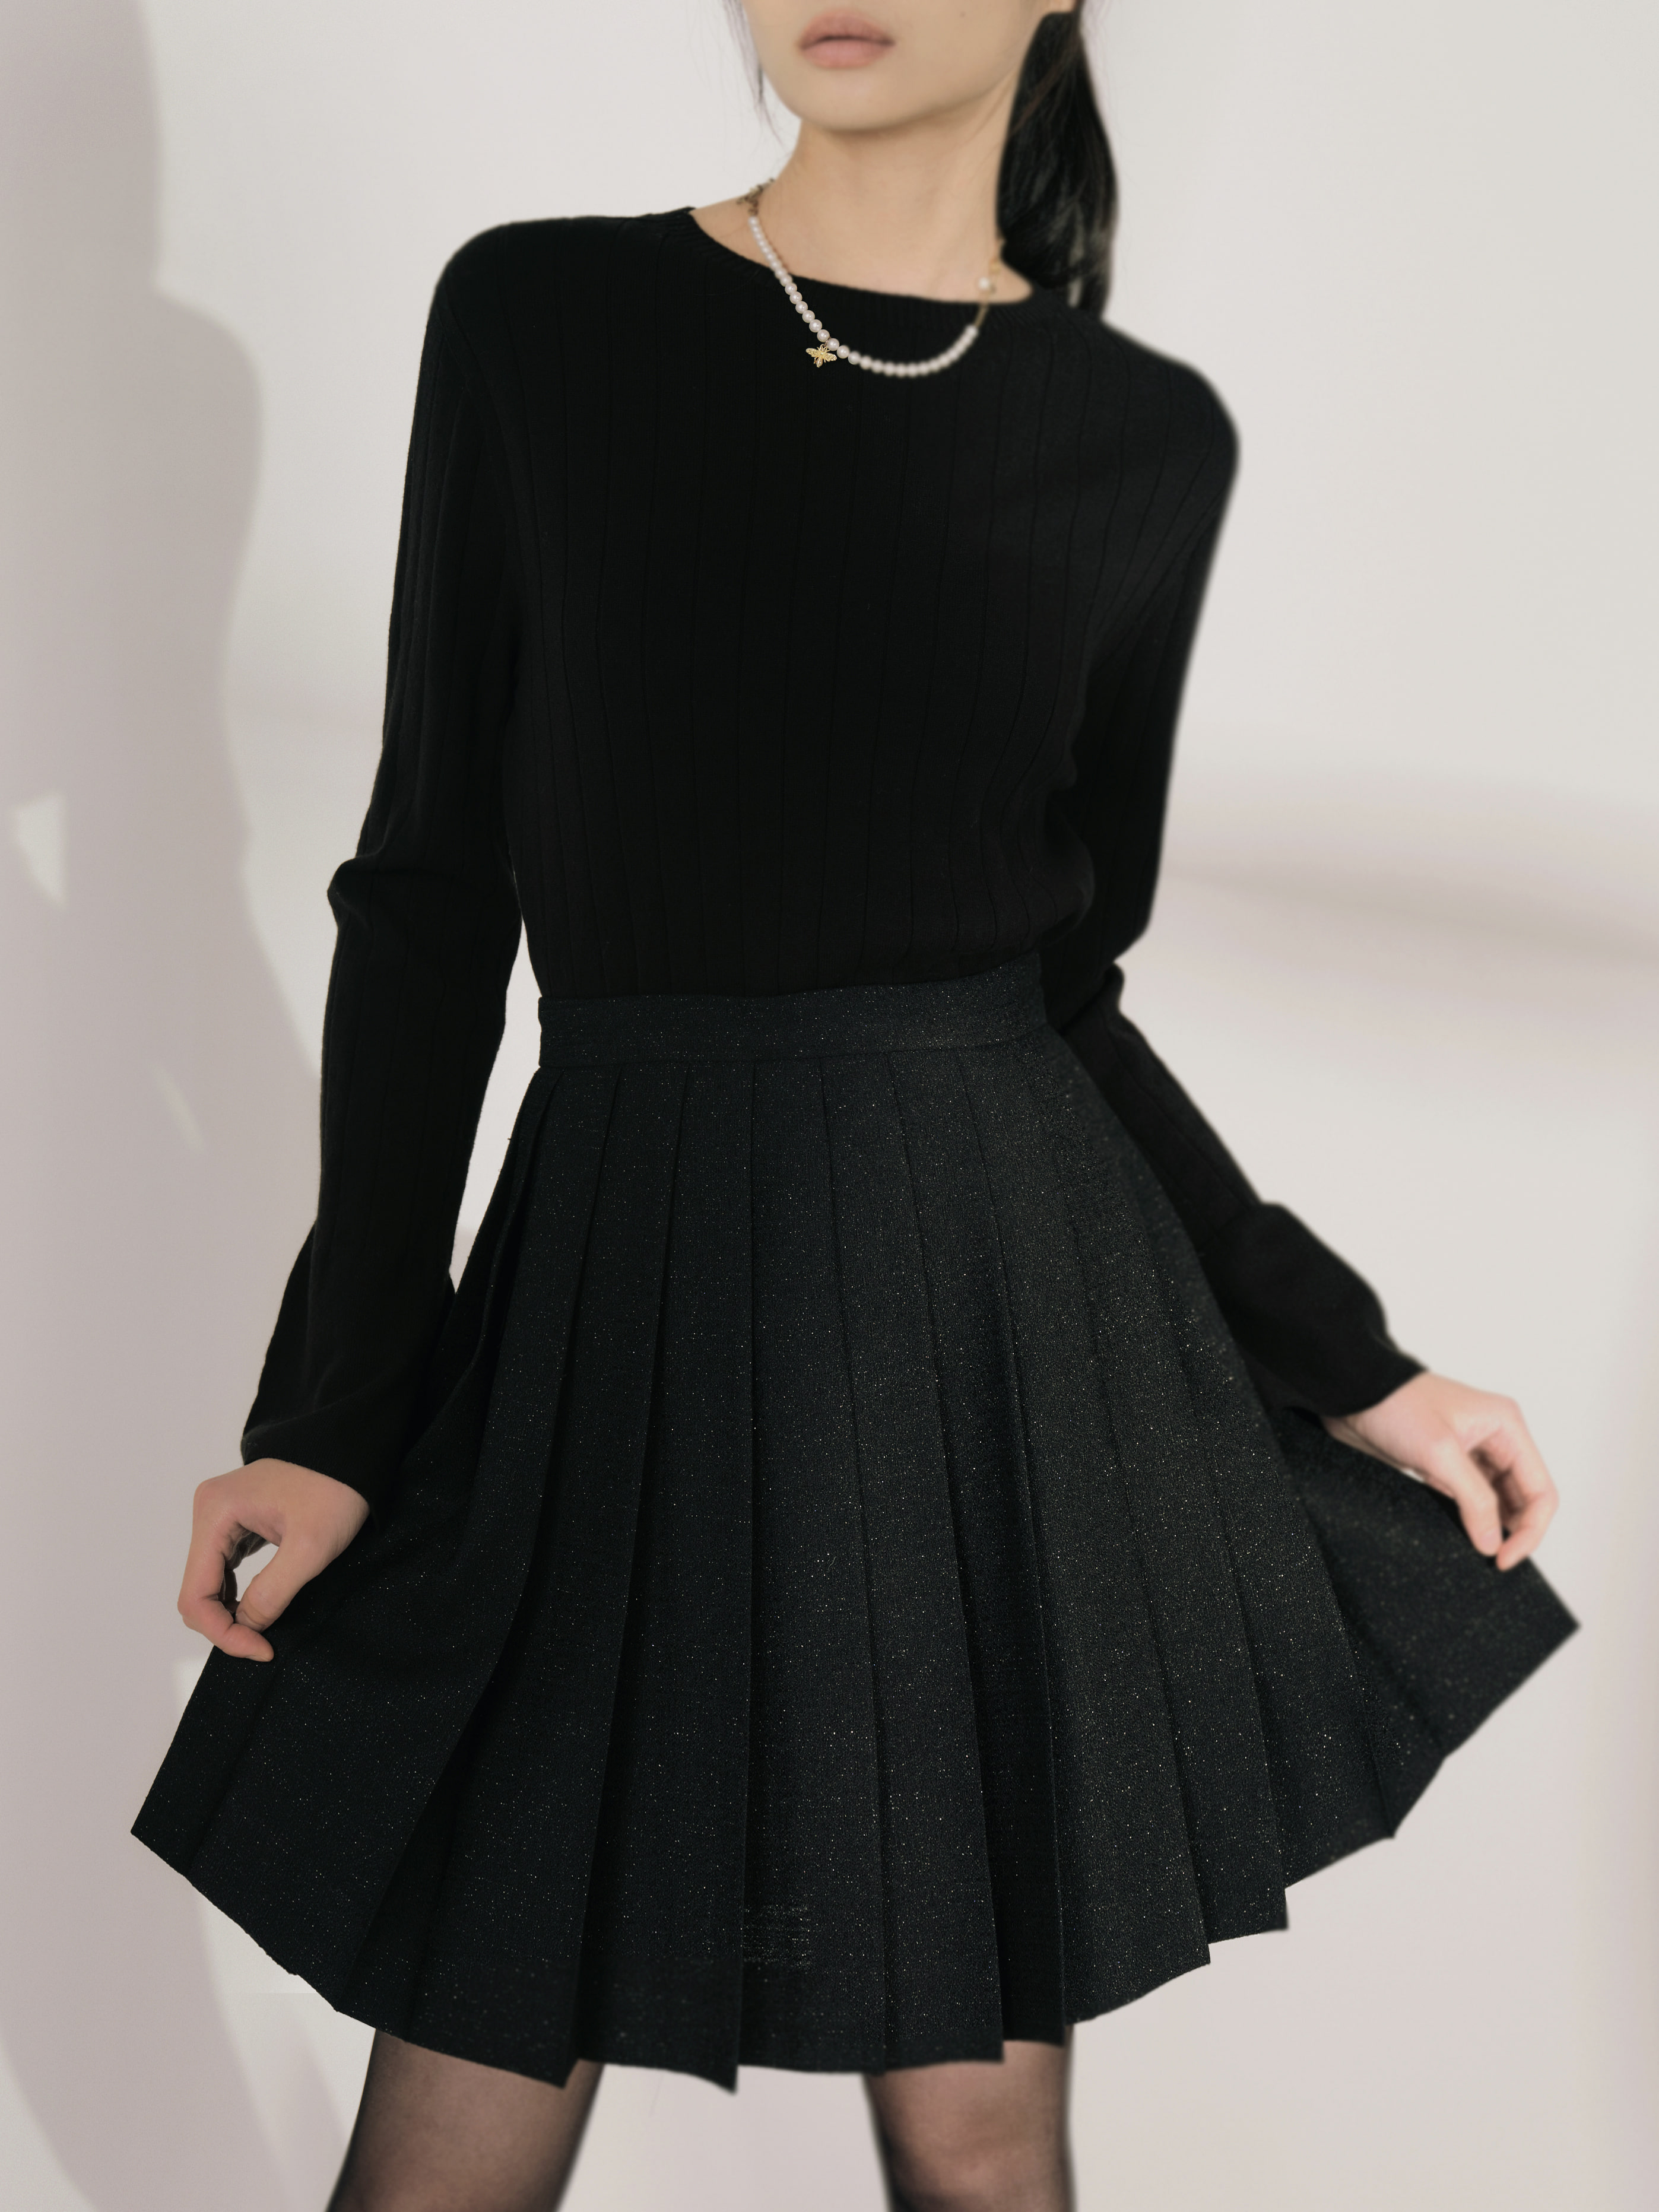 starry tweed skirt